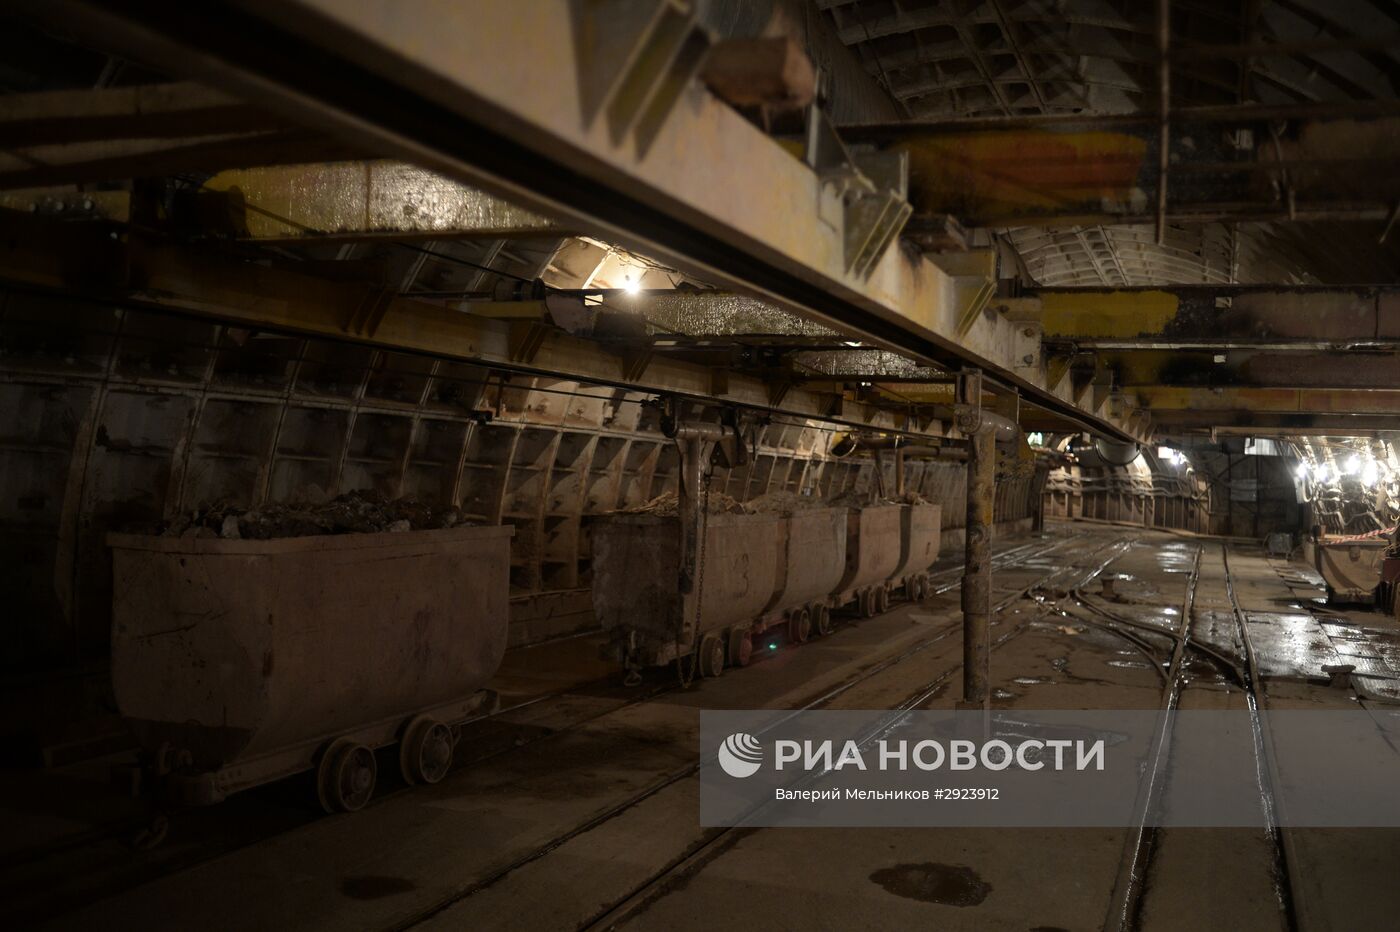 Строительство станции метро "Окружная" в Москве